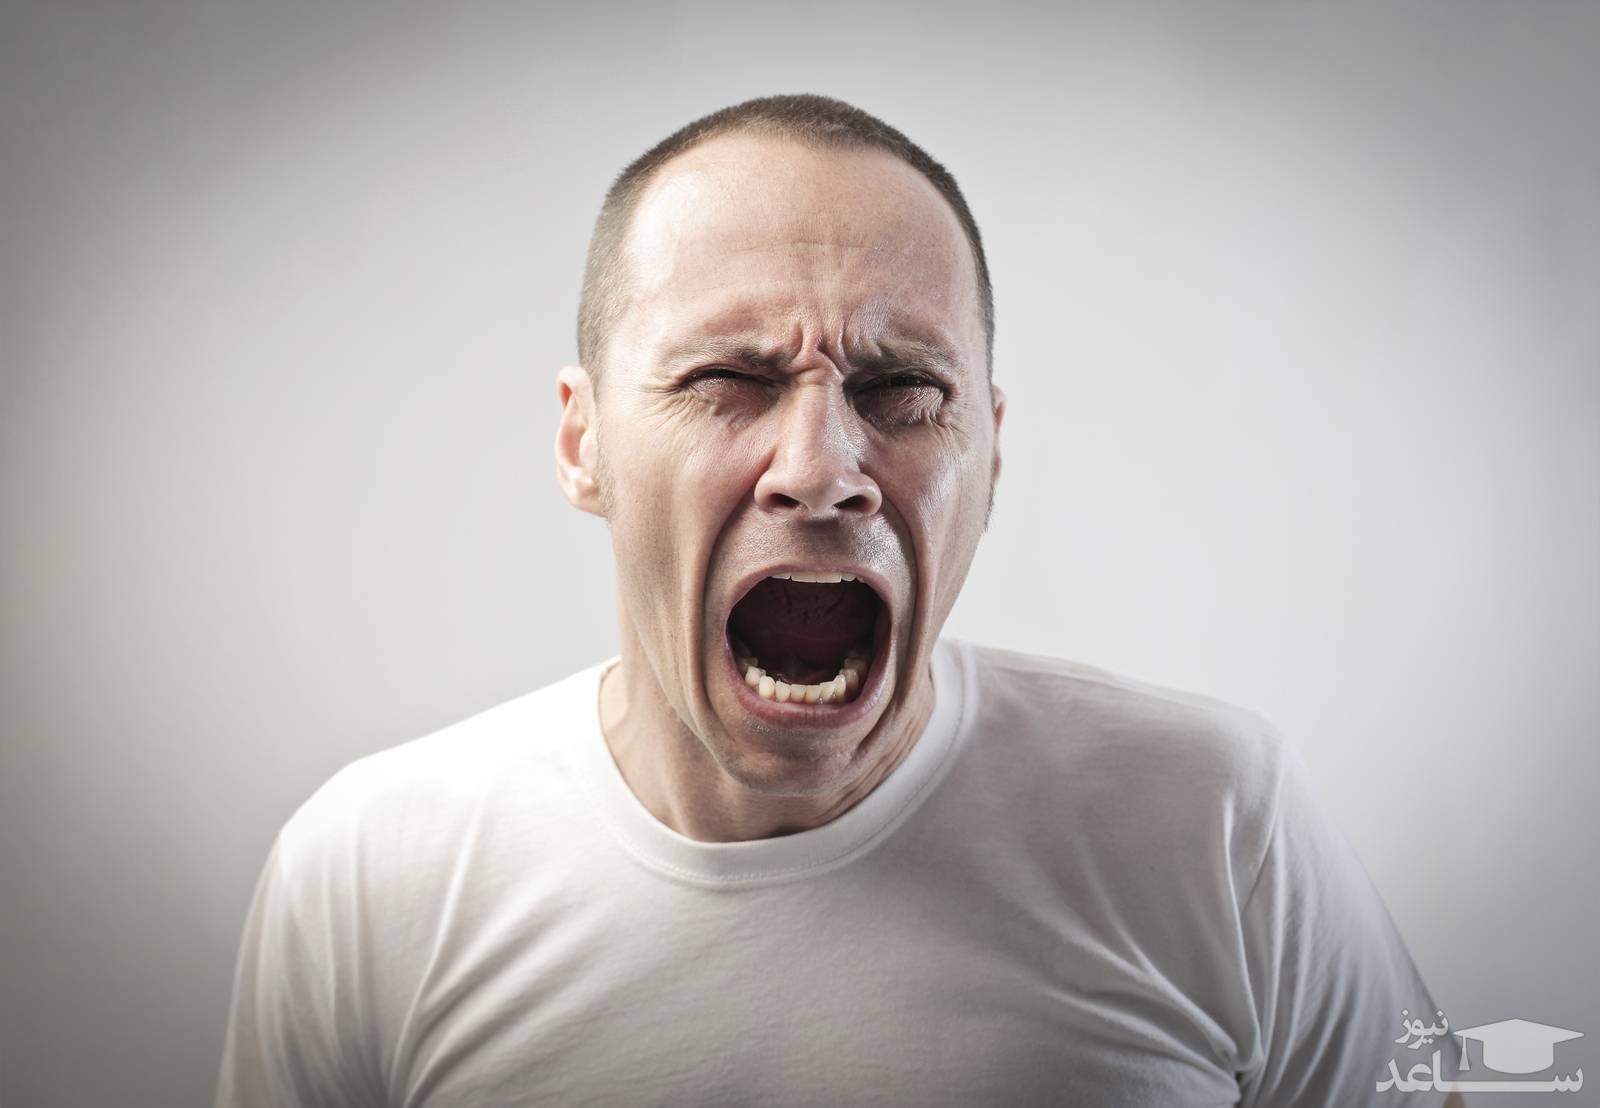 ارزیابی میزان خشم و پرخاشگری با تست روانشناسی